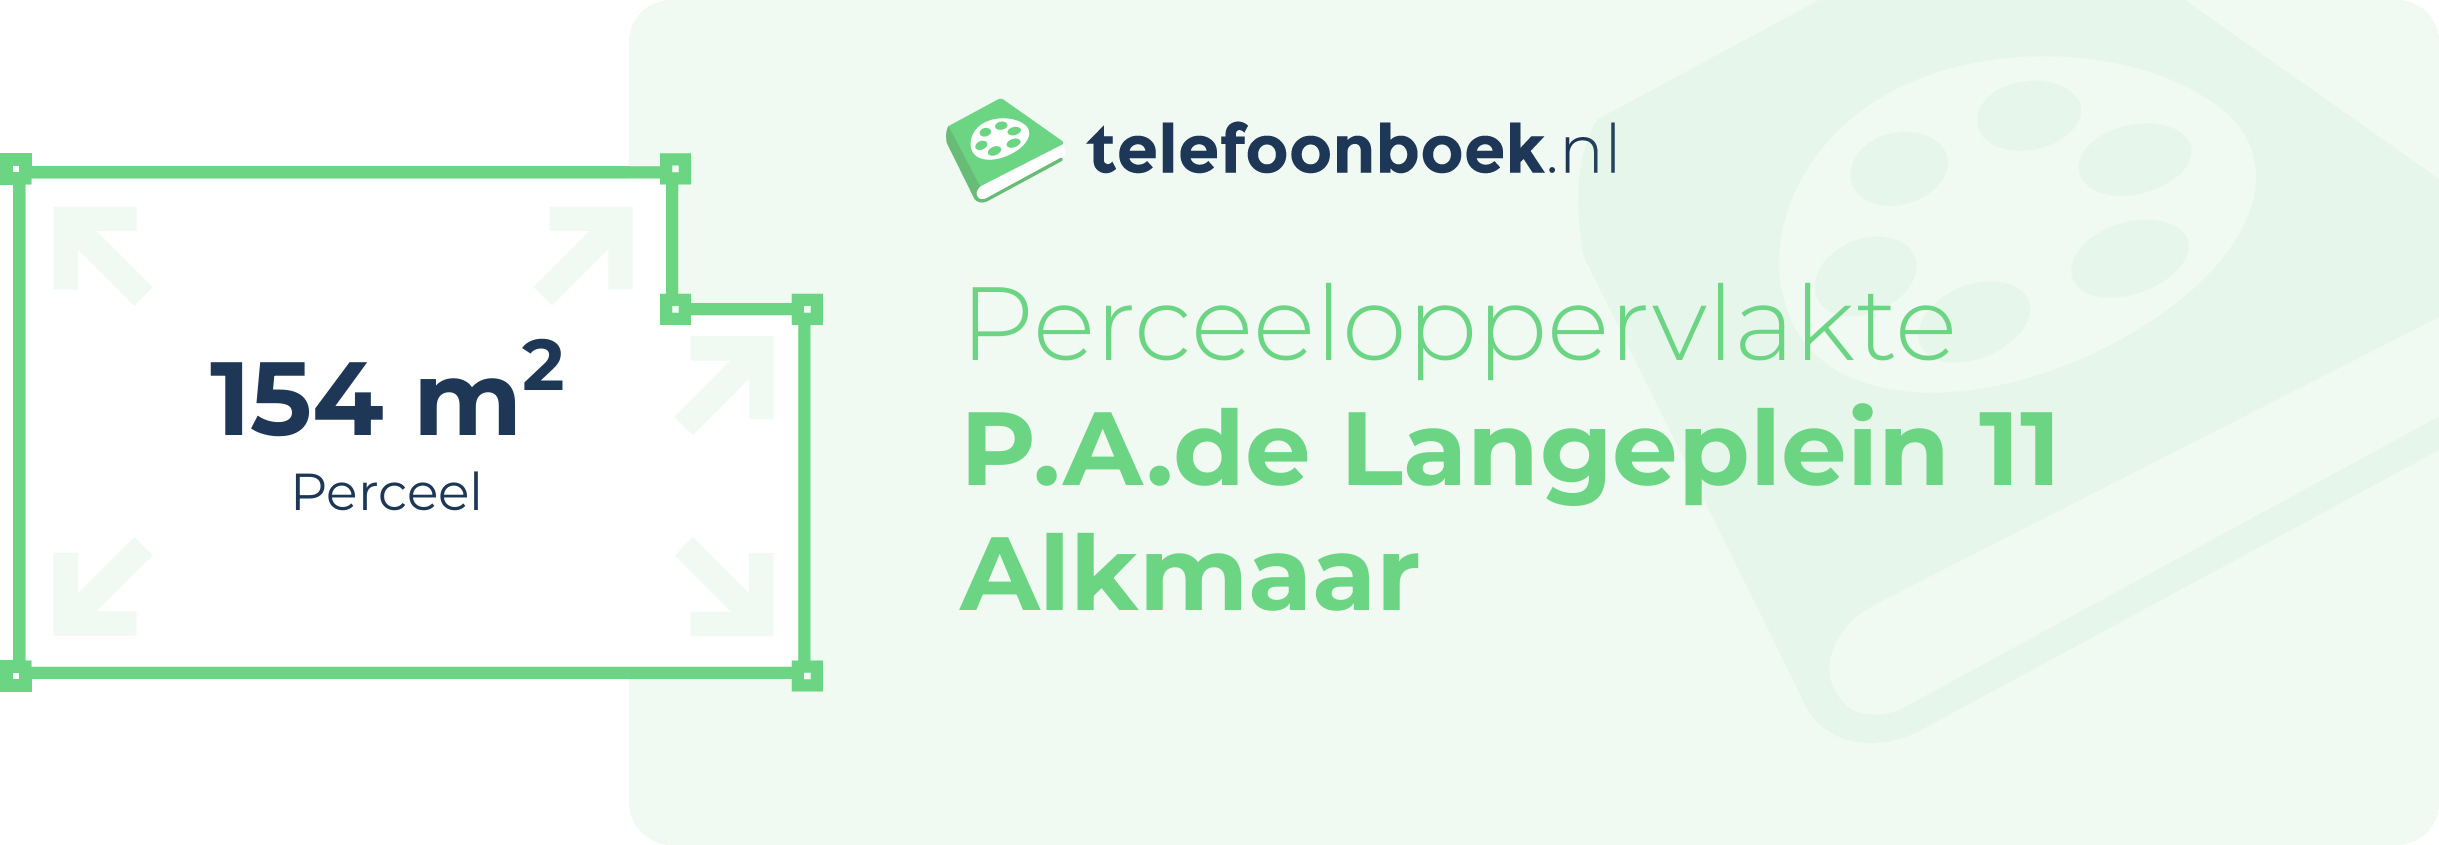 Perceeloppervlakte P.A.de Langeplein 11 Alkmaar